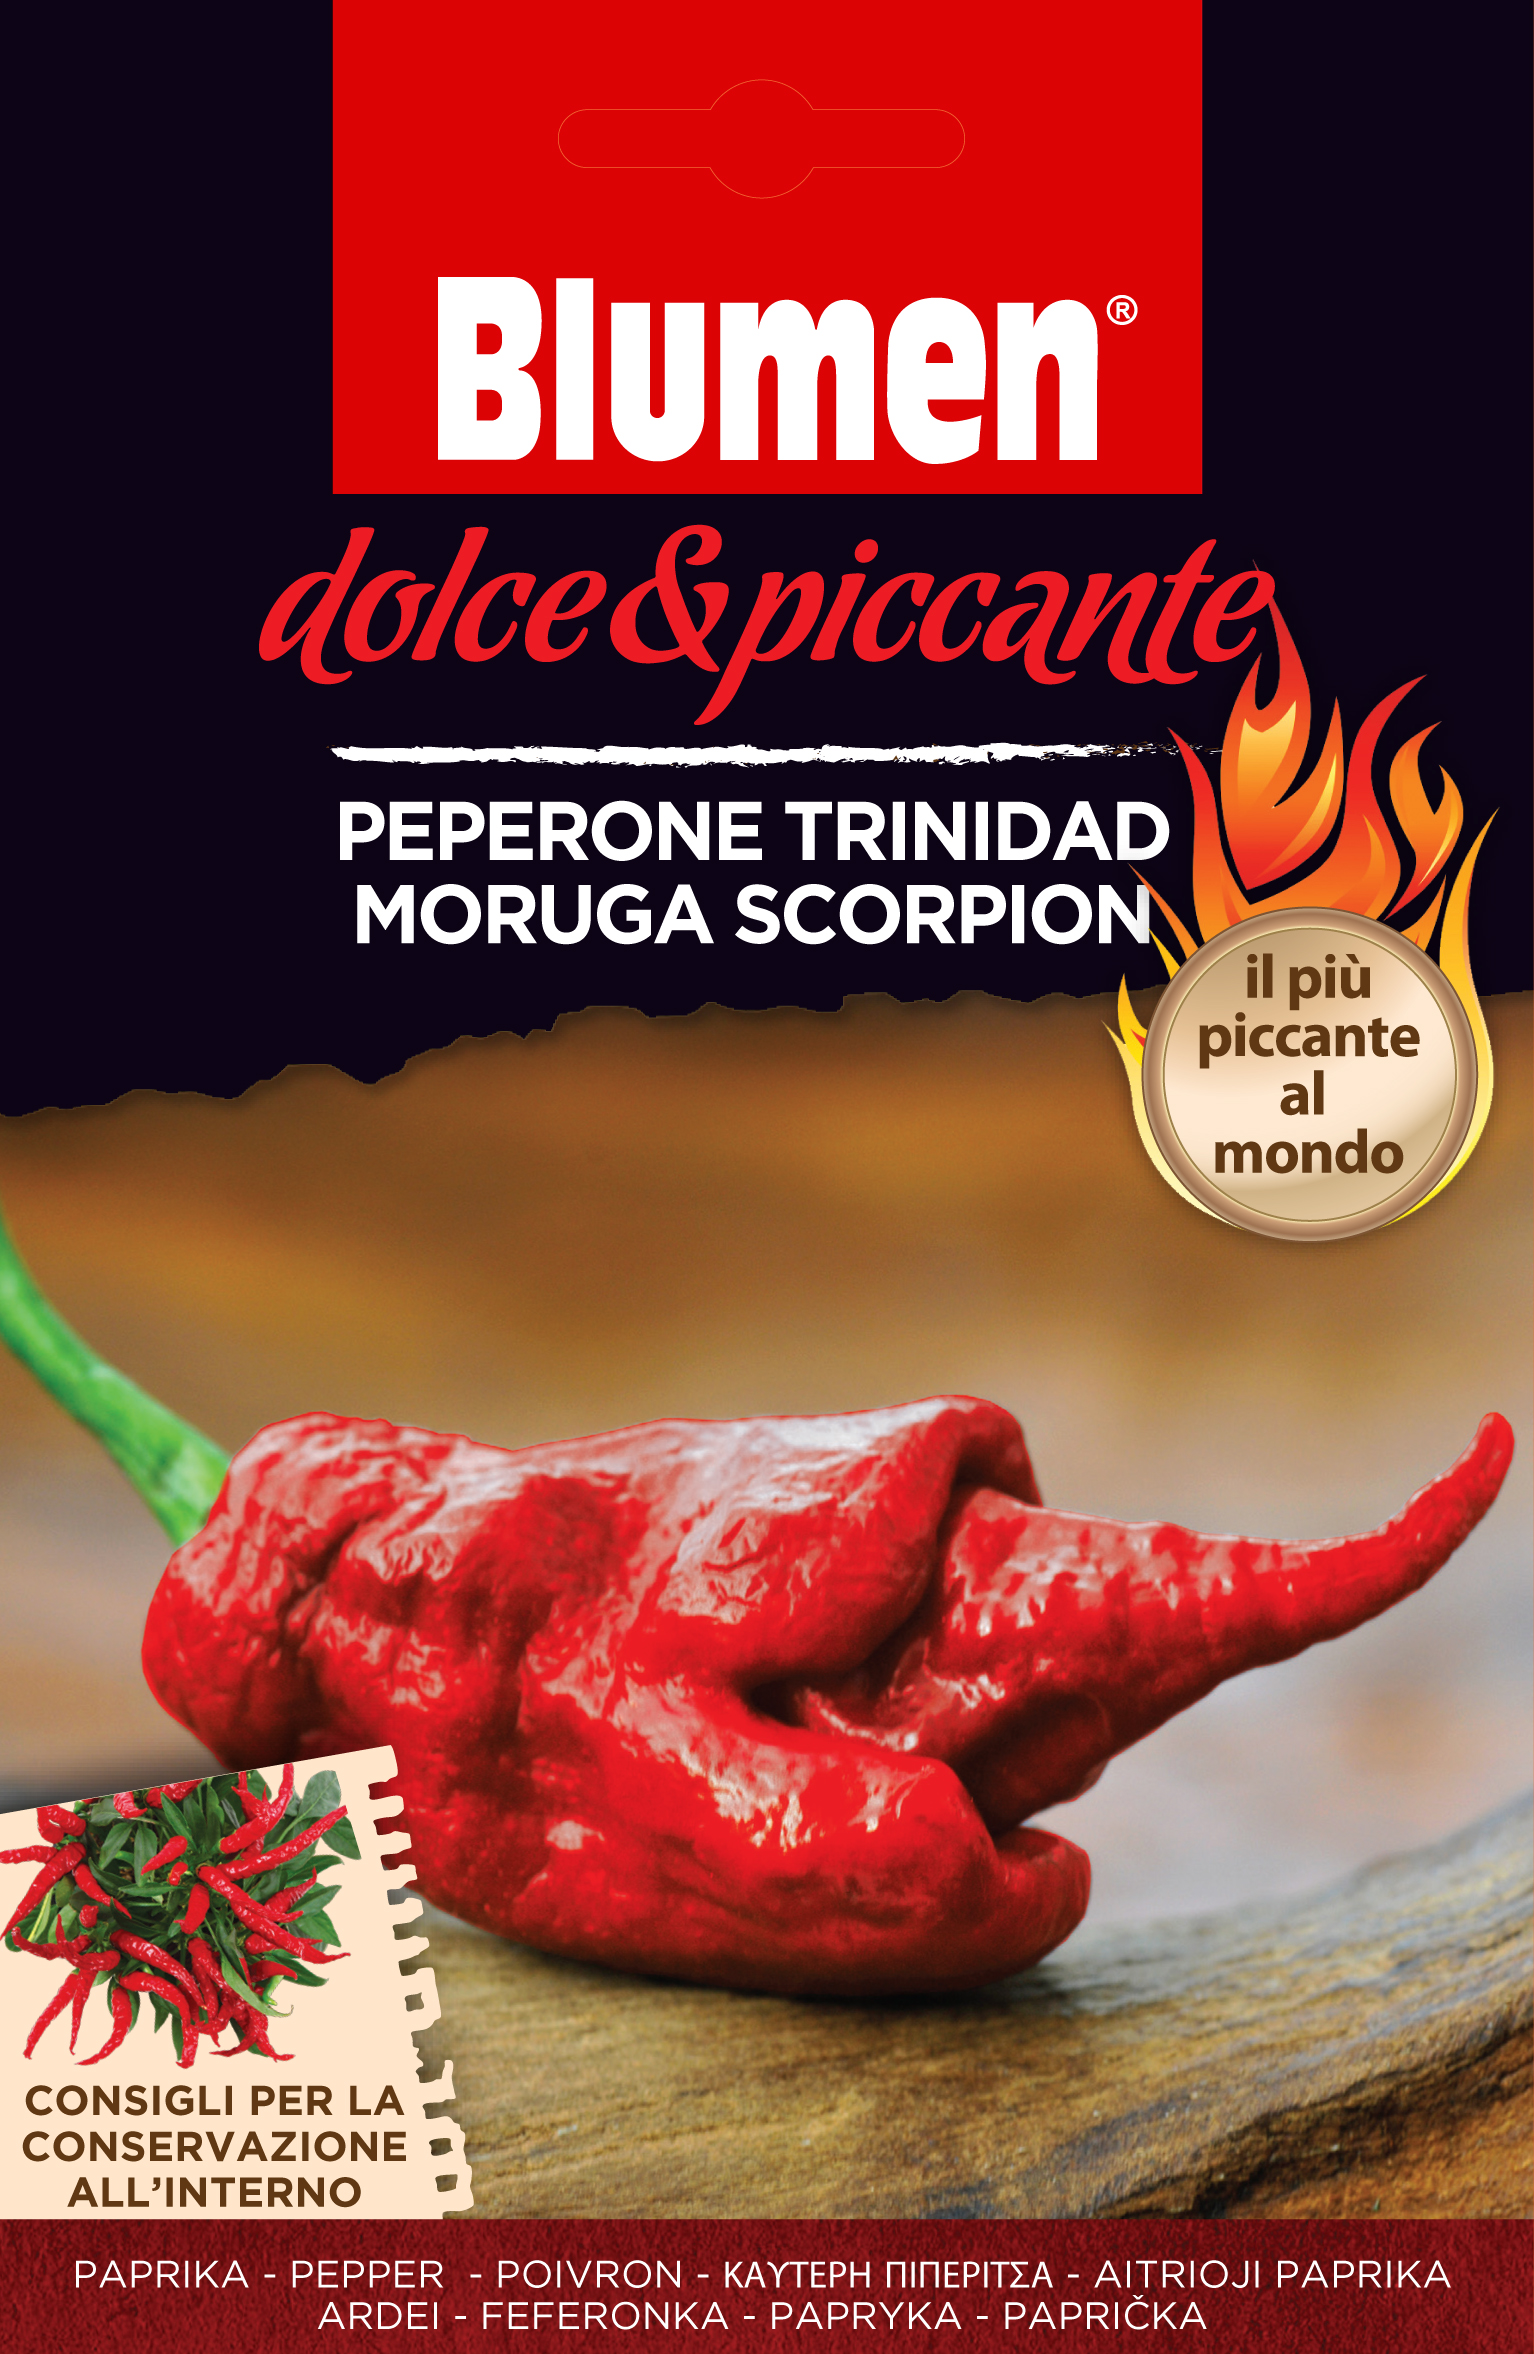 Blumen Paprika - Trinidad moruga scorpion, a világ legerősebb paprikája